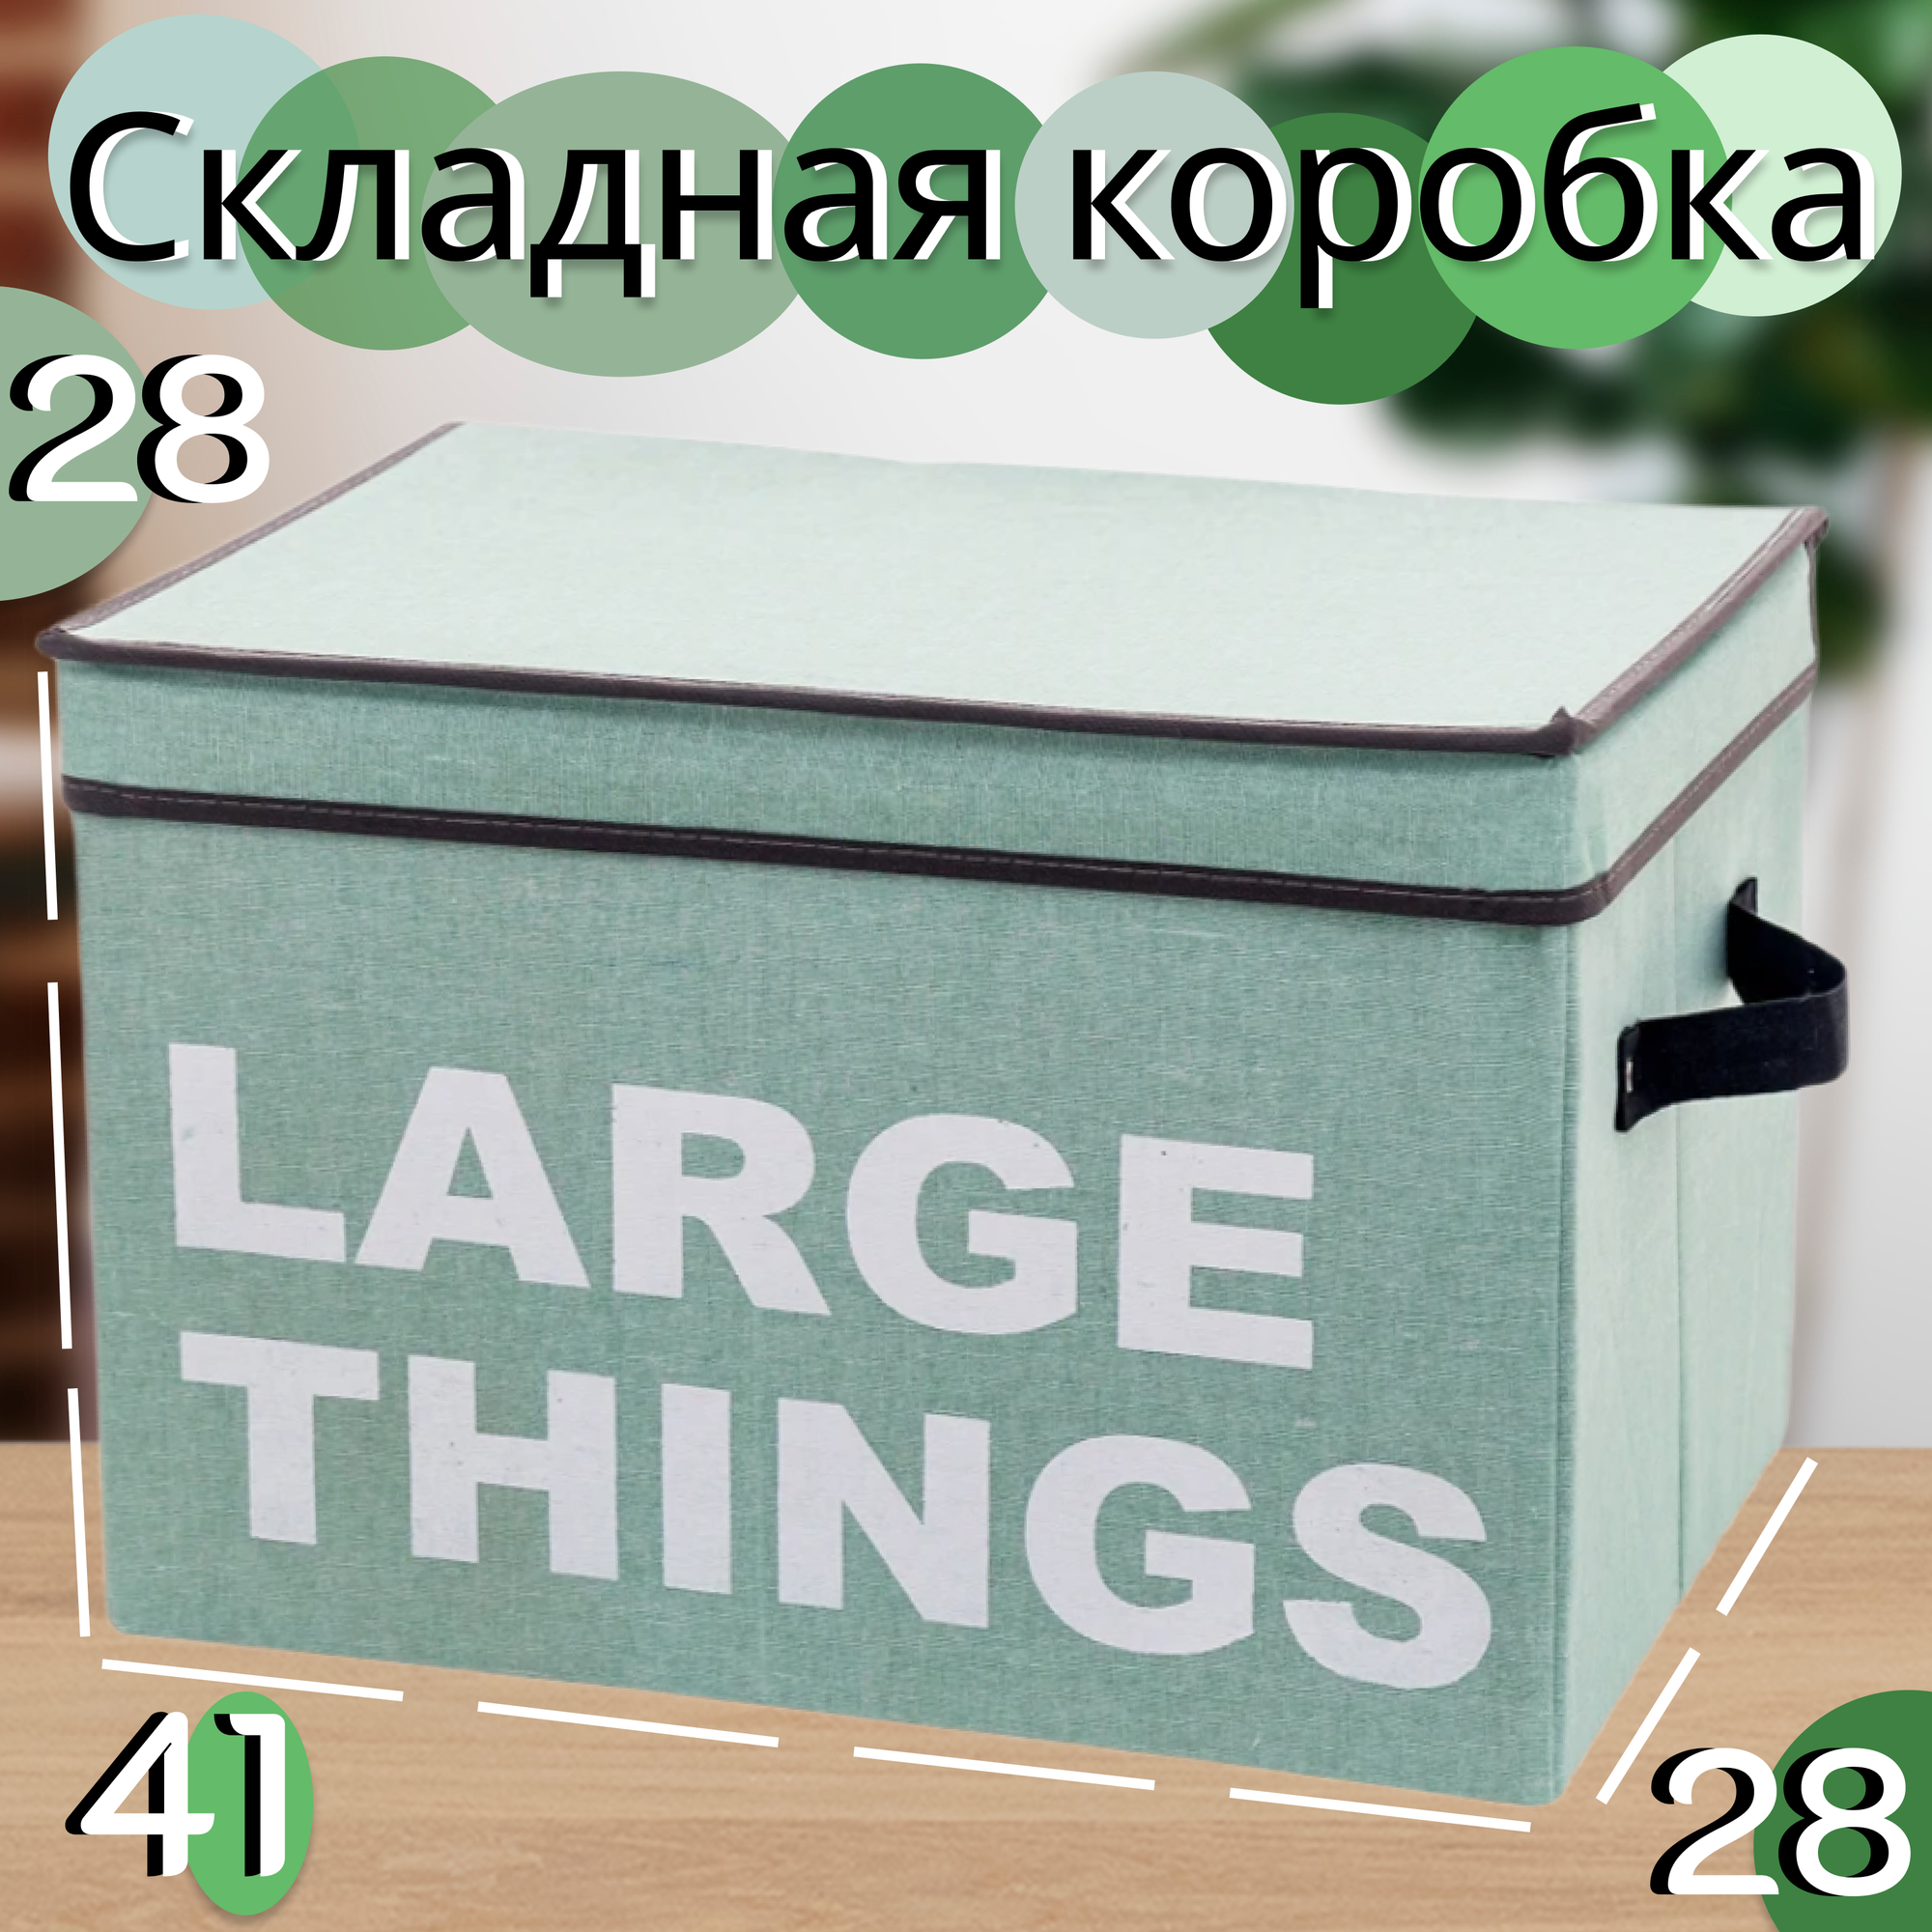 Тканевая складная коробка для хранения вещей, 41х28х28 см / Мятный интерьерный короб с крышкой для одежды, белья, обуви, игрушек / Органайзер для дома